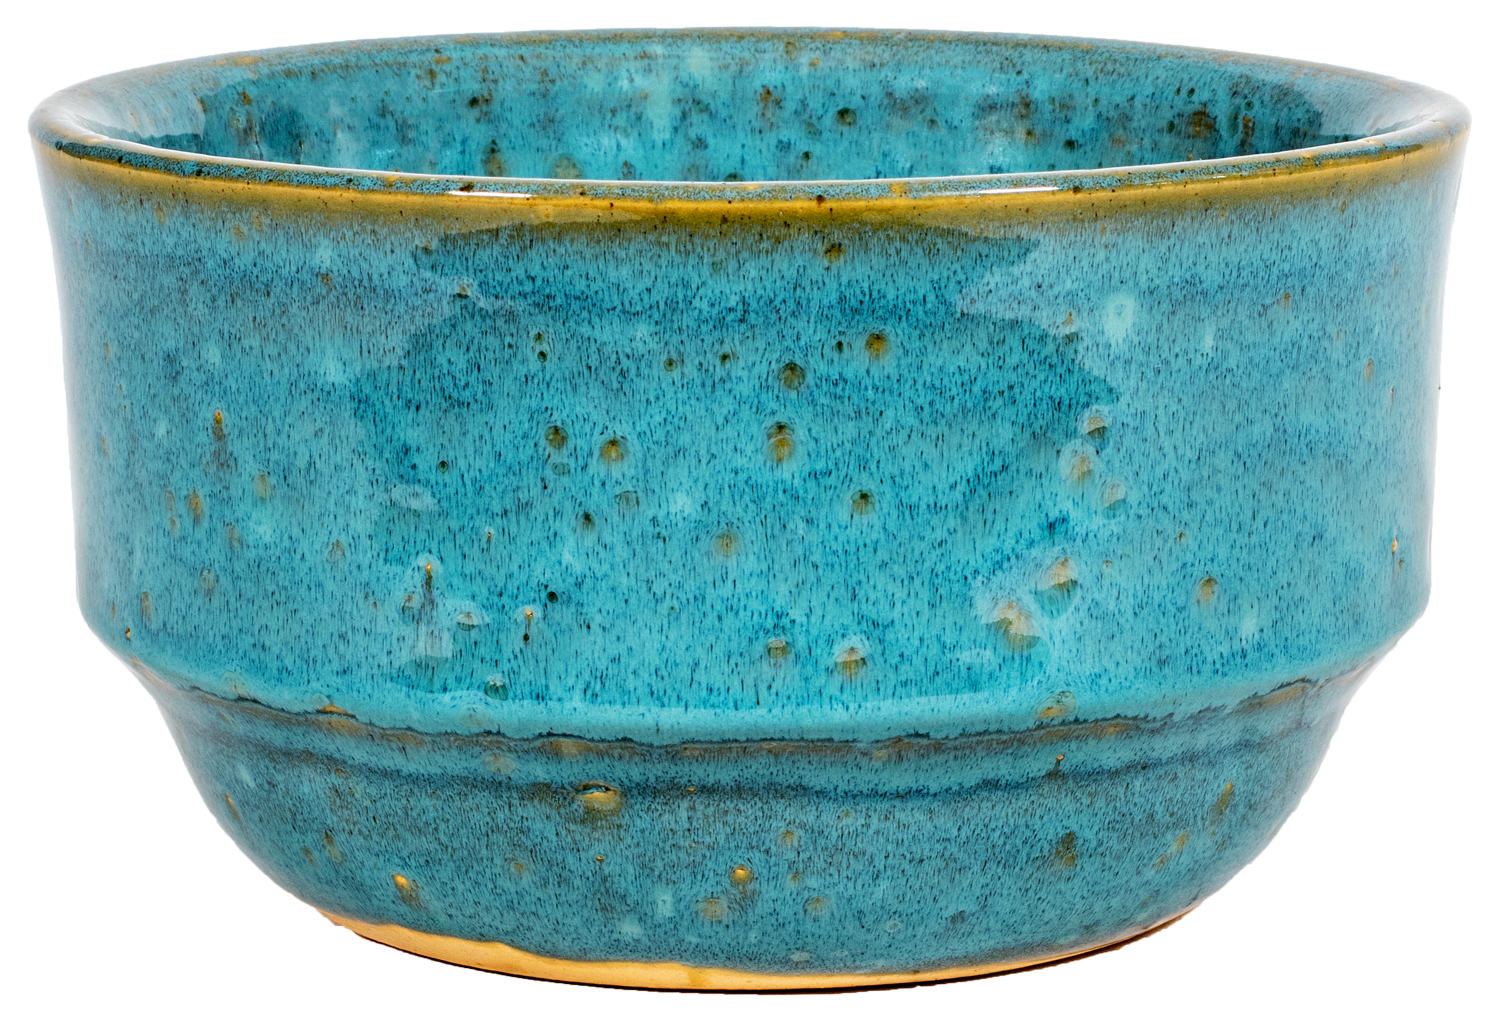 Medium rounded bowl planter in turquoise glaze